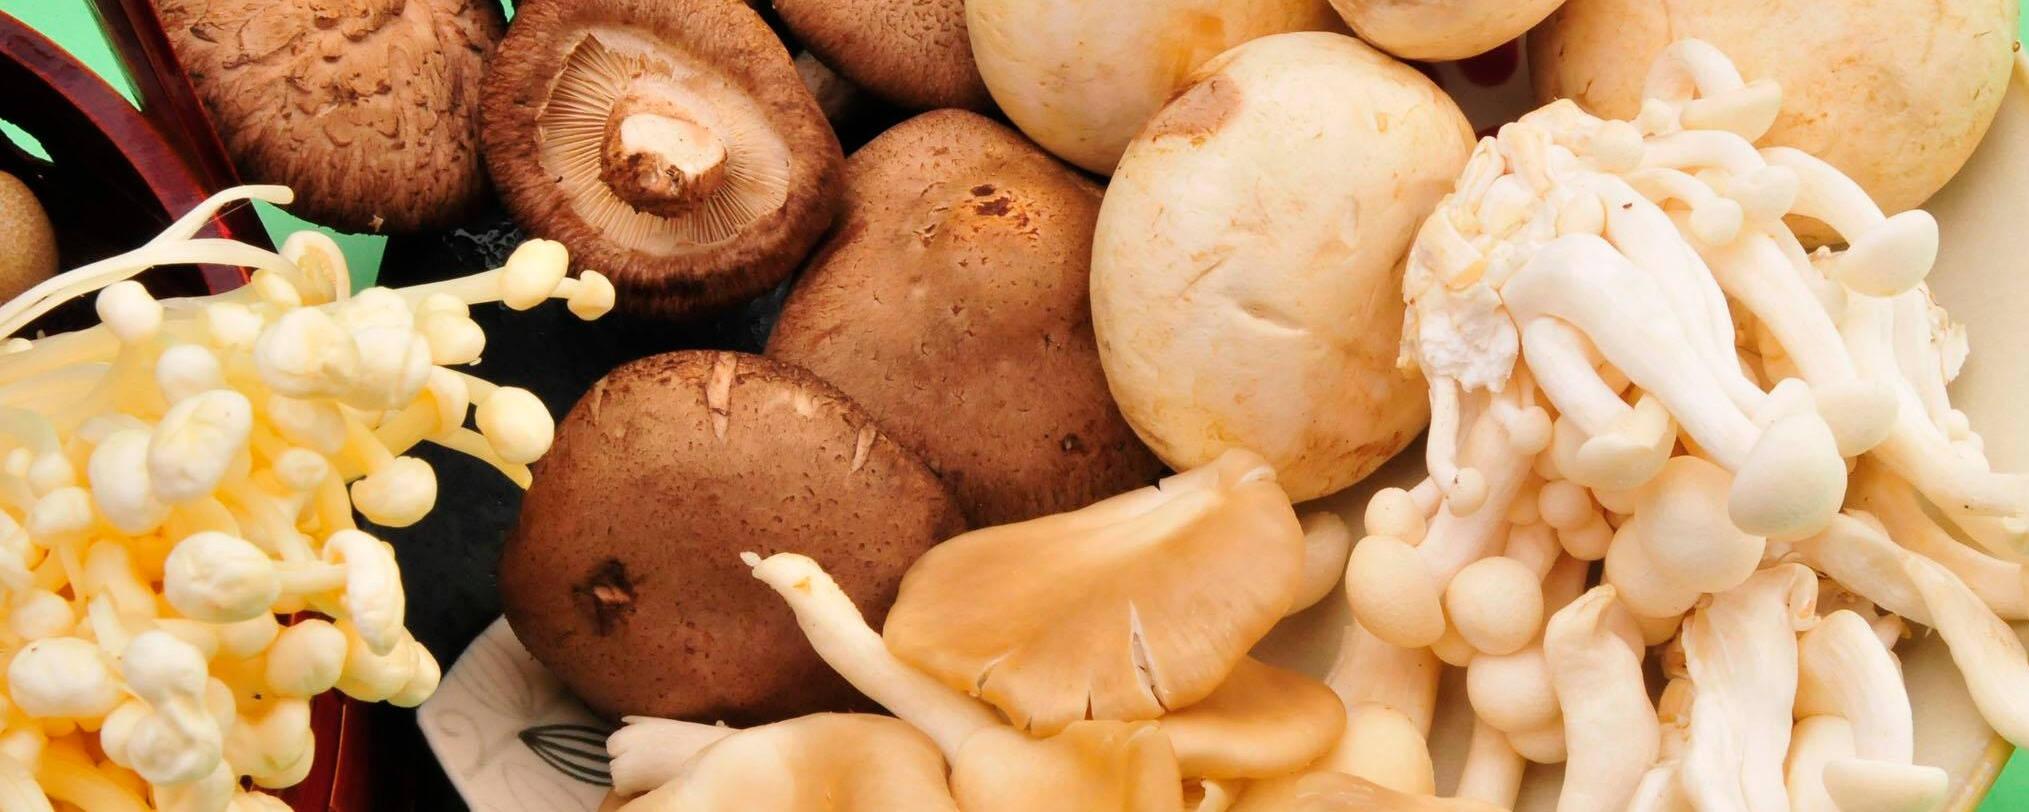 十款营养丰富的菌菇类食材推荐